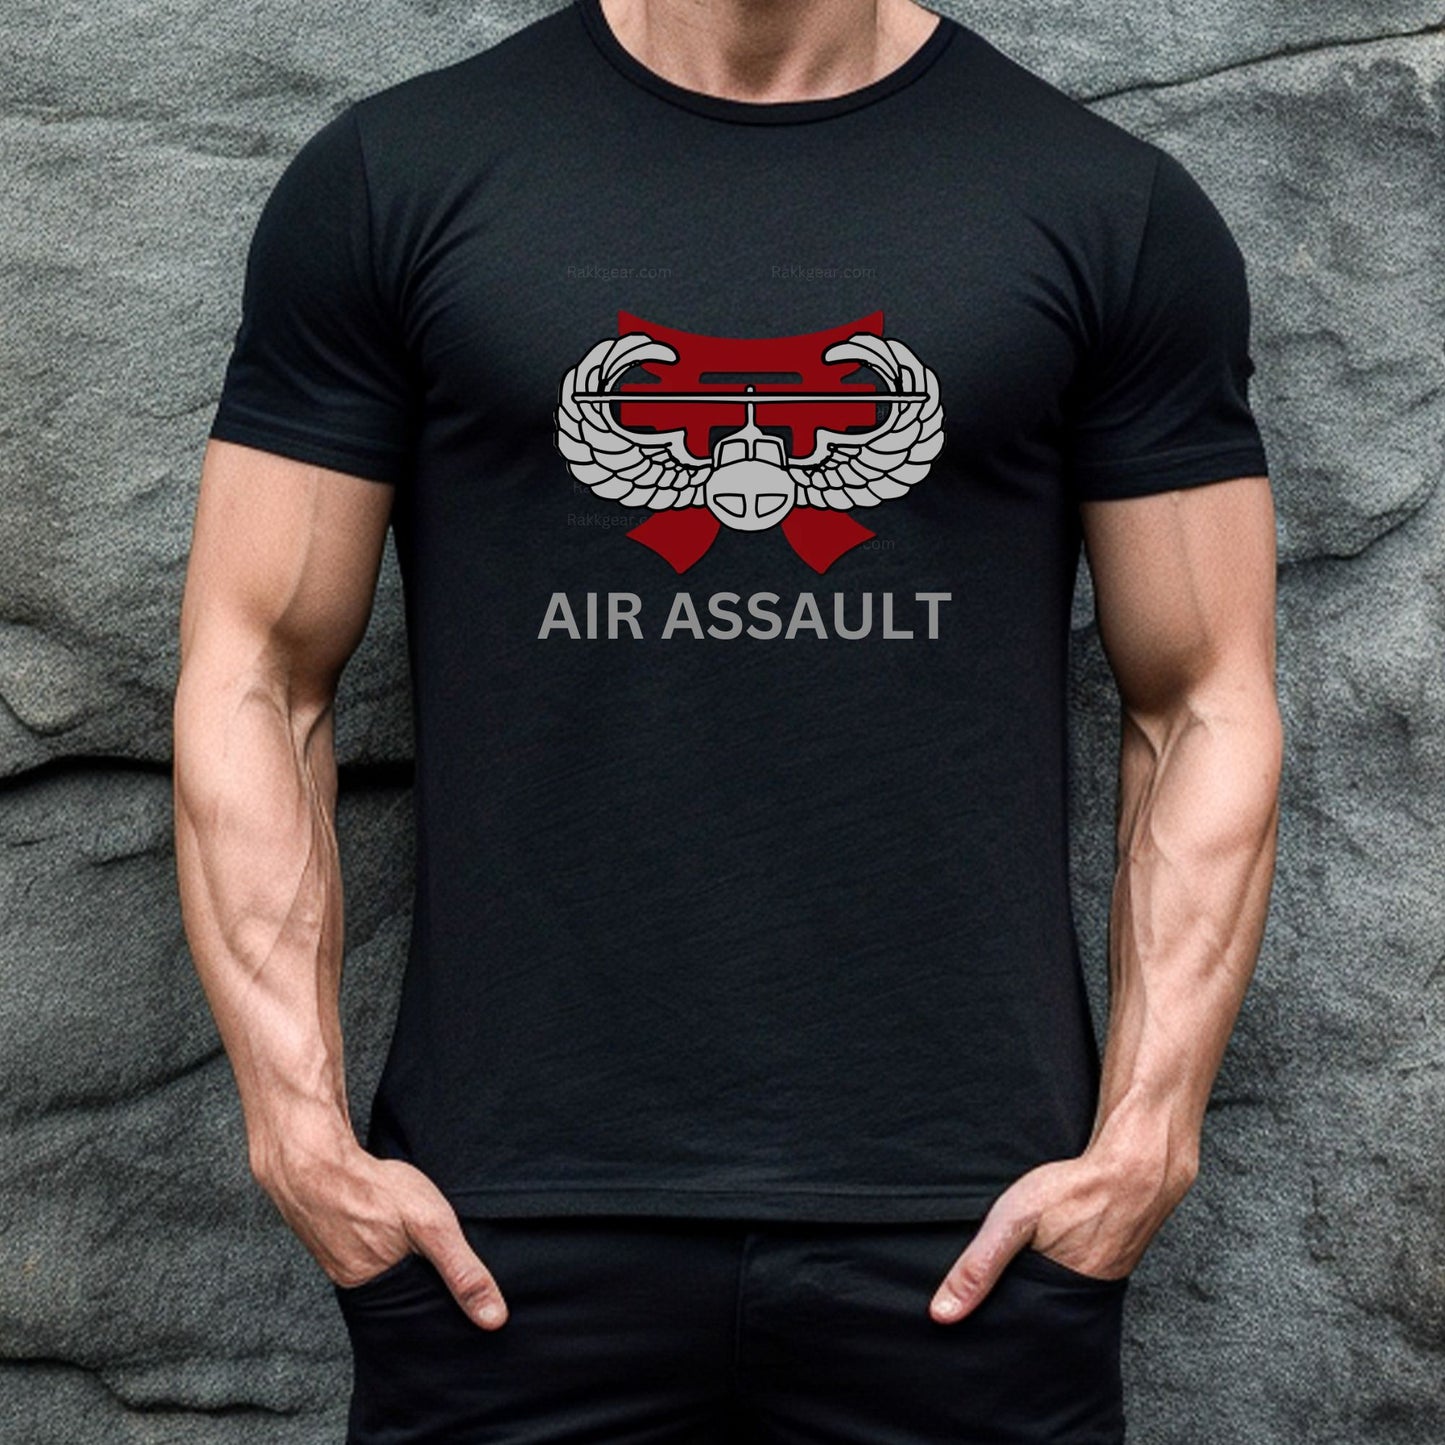 Rakkgear Air Assault Short Sleeve Tee in black